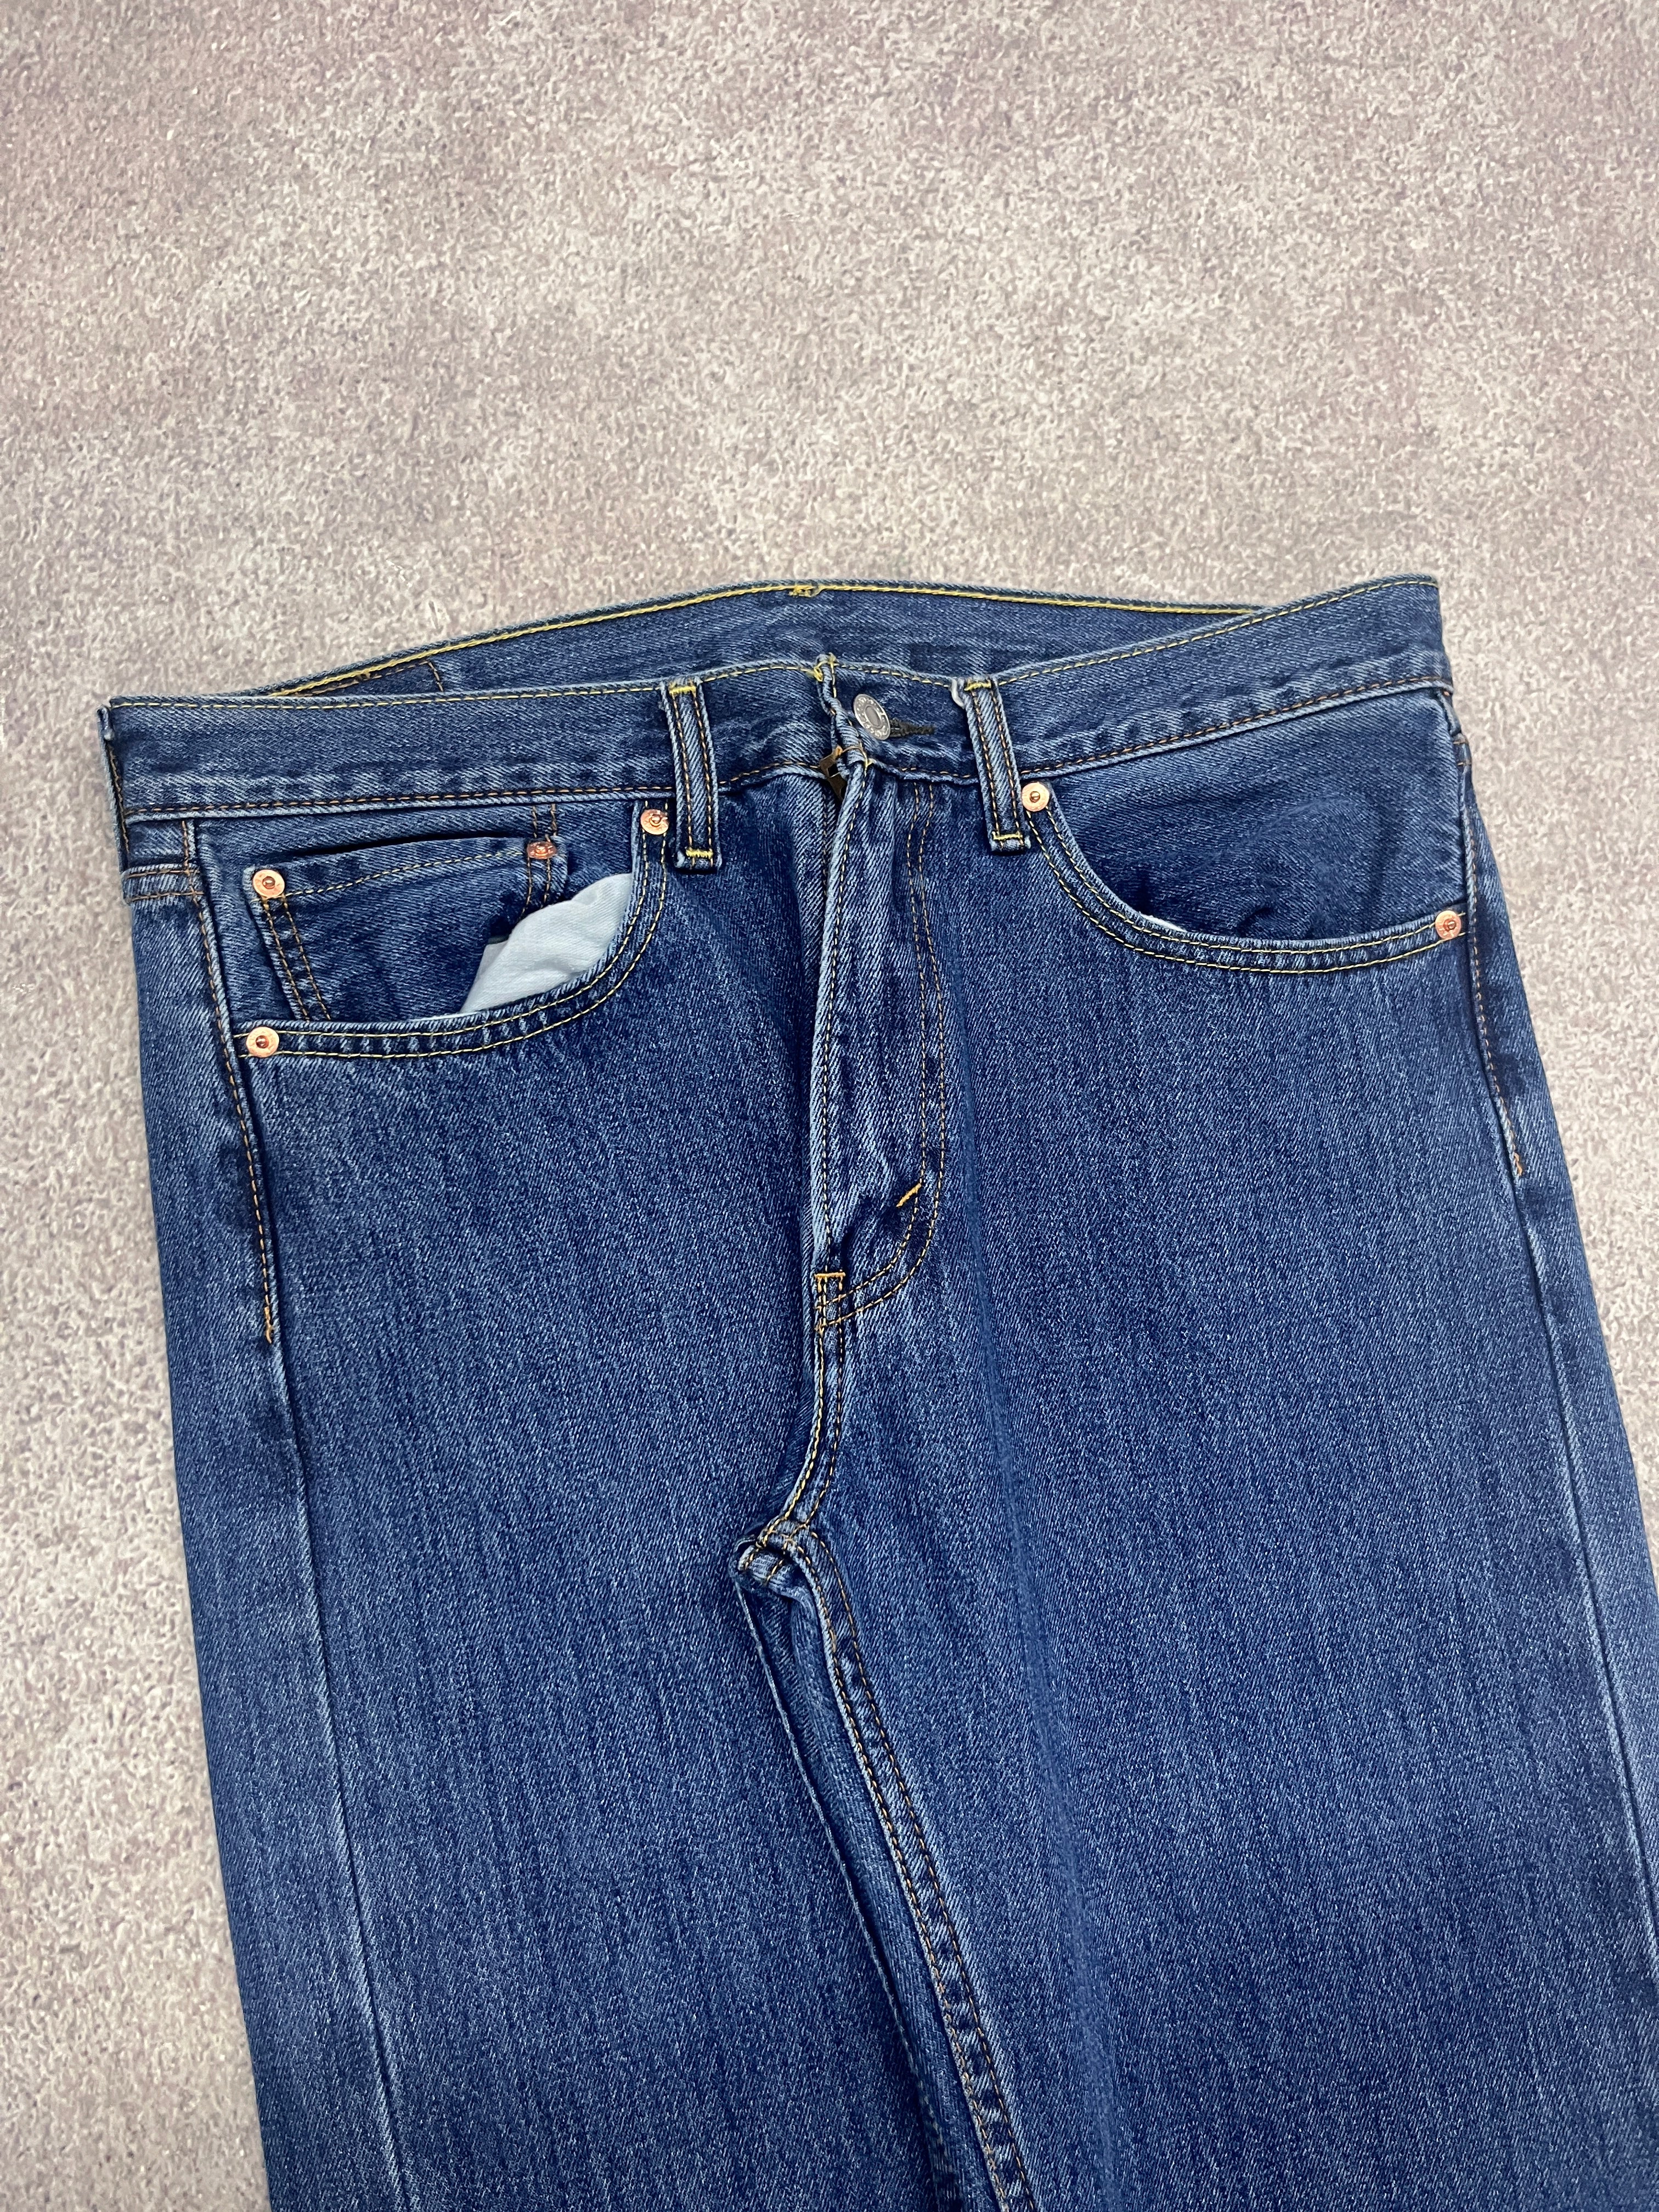 Vintage Levi 505 Denim Jeans Blue // W34 L32 - RHAGHOUSE VINTAGE